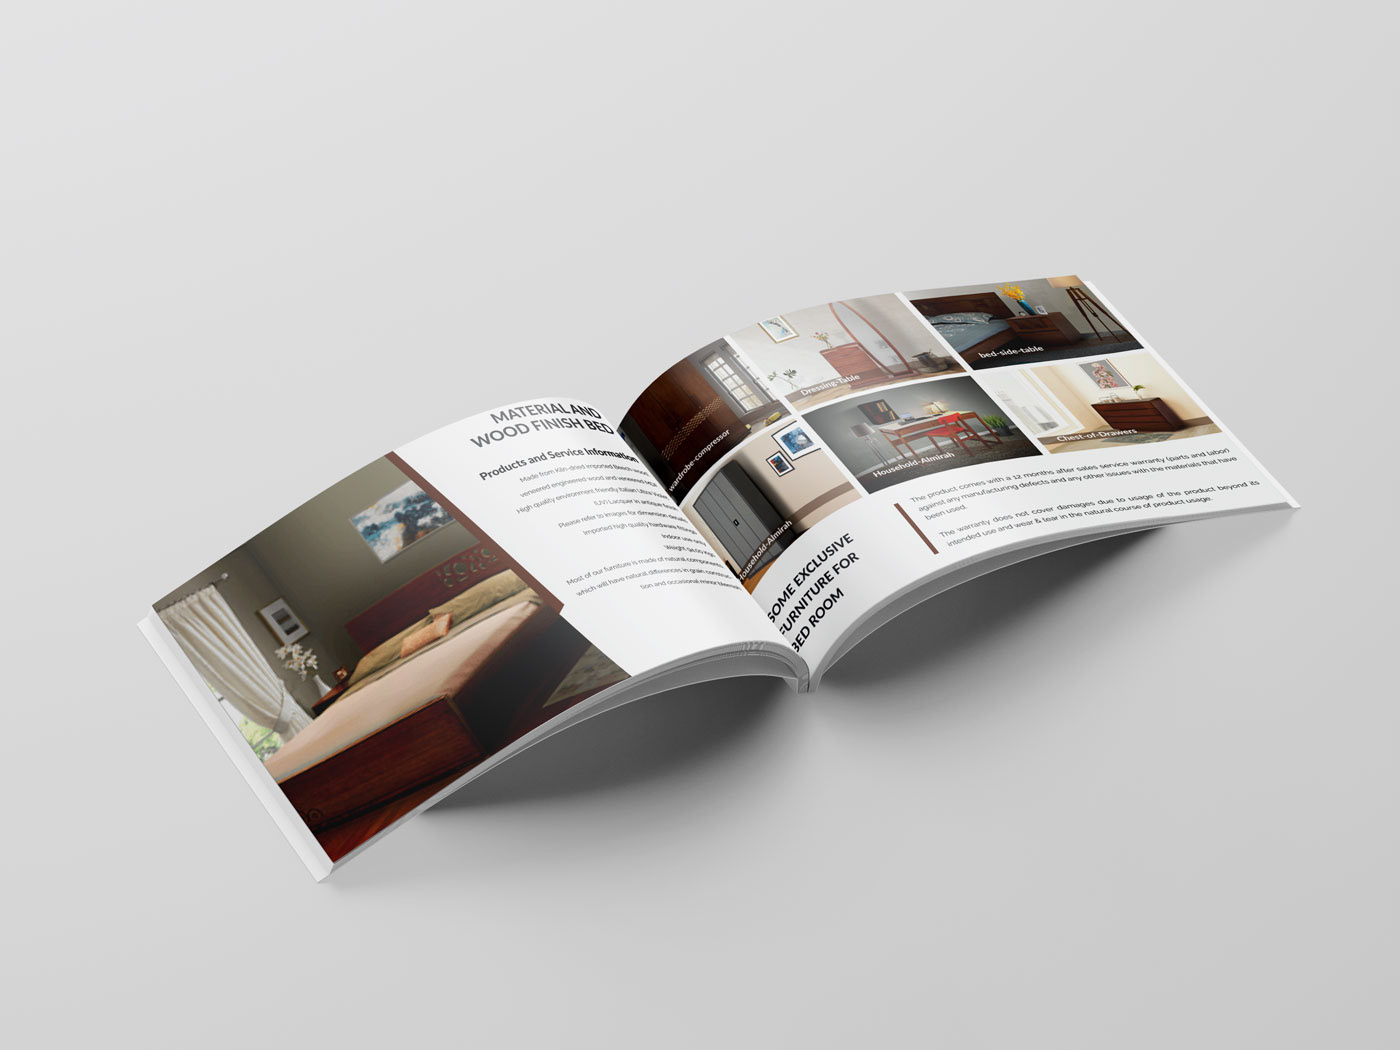 advertisement annual report brochure cataloque Furniture Catalog InDesign portfolio presentation product brochure Product Catalog